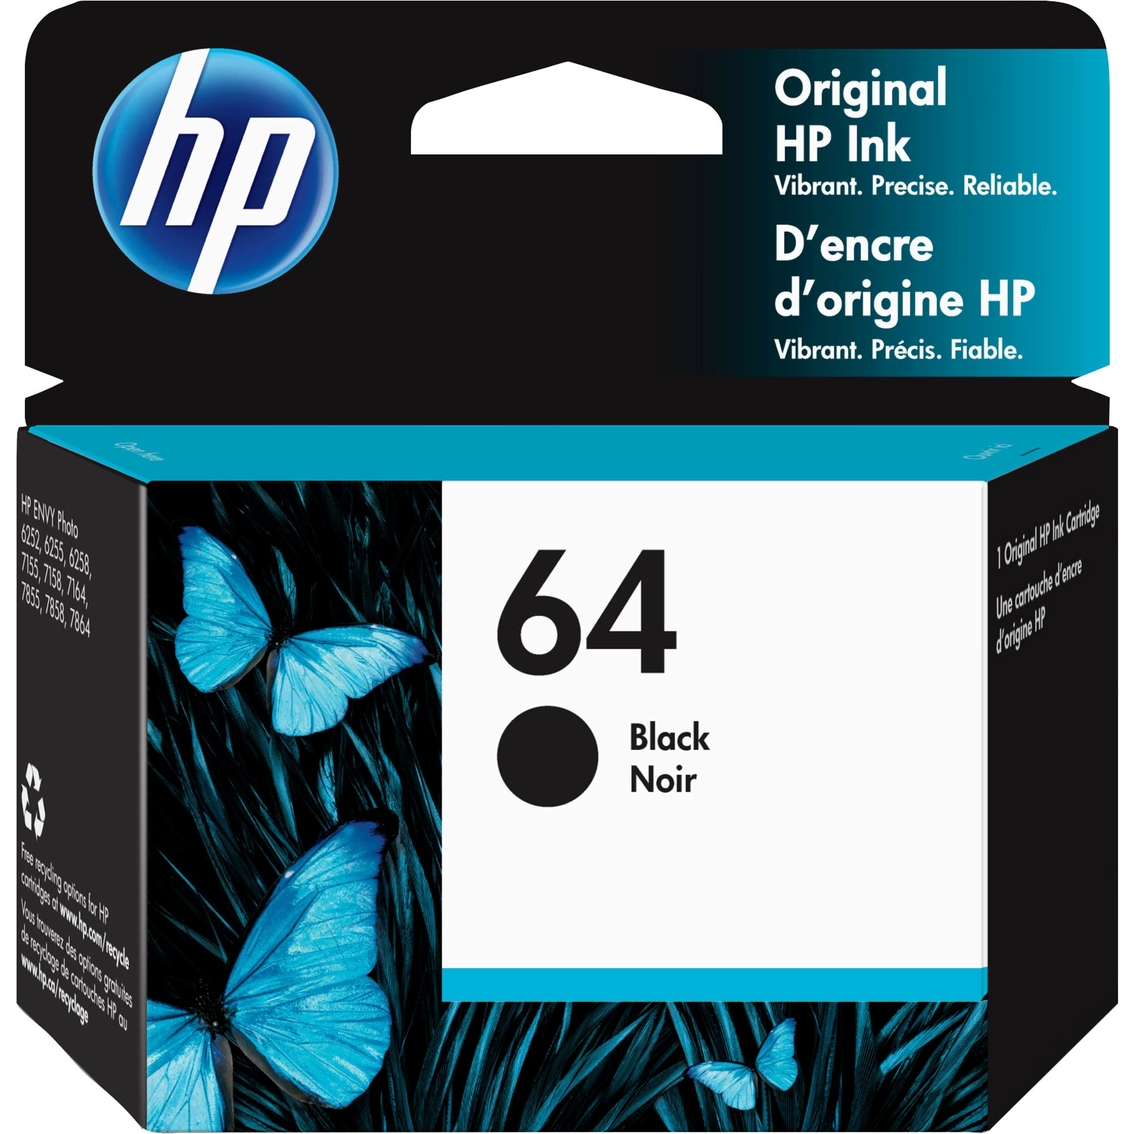 HP 64 Black Ink